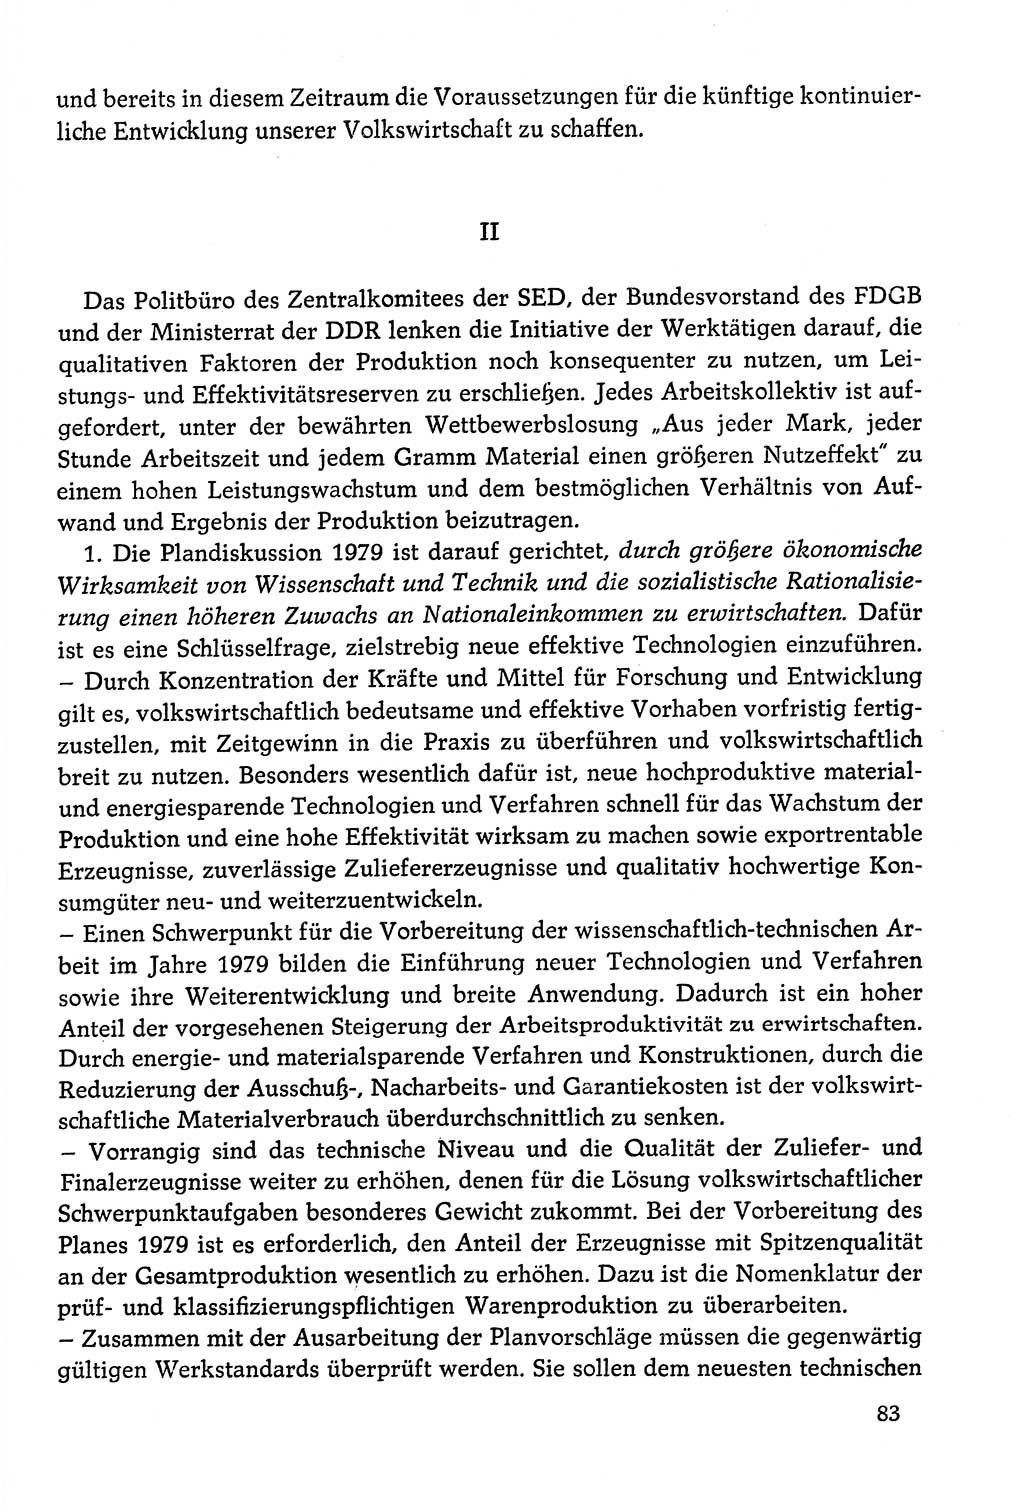 Dokumente der Sozialistischen Einheitspartei Deutschlands (SED) [Deutsche Demokratische Republik (DDR)] 1978-1979, Seite 83 (Dok. SED DDR 1978-1979, S. 83)